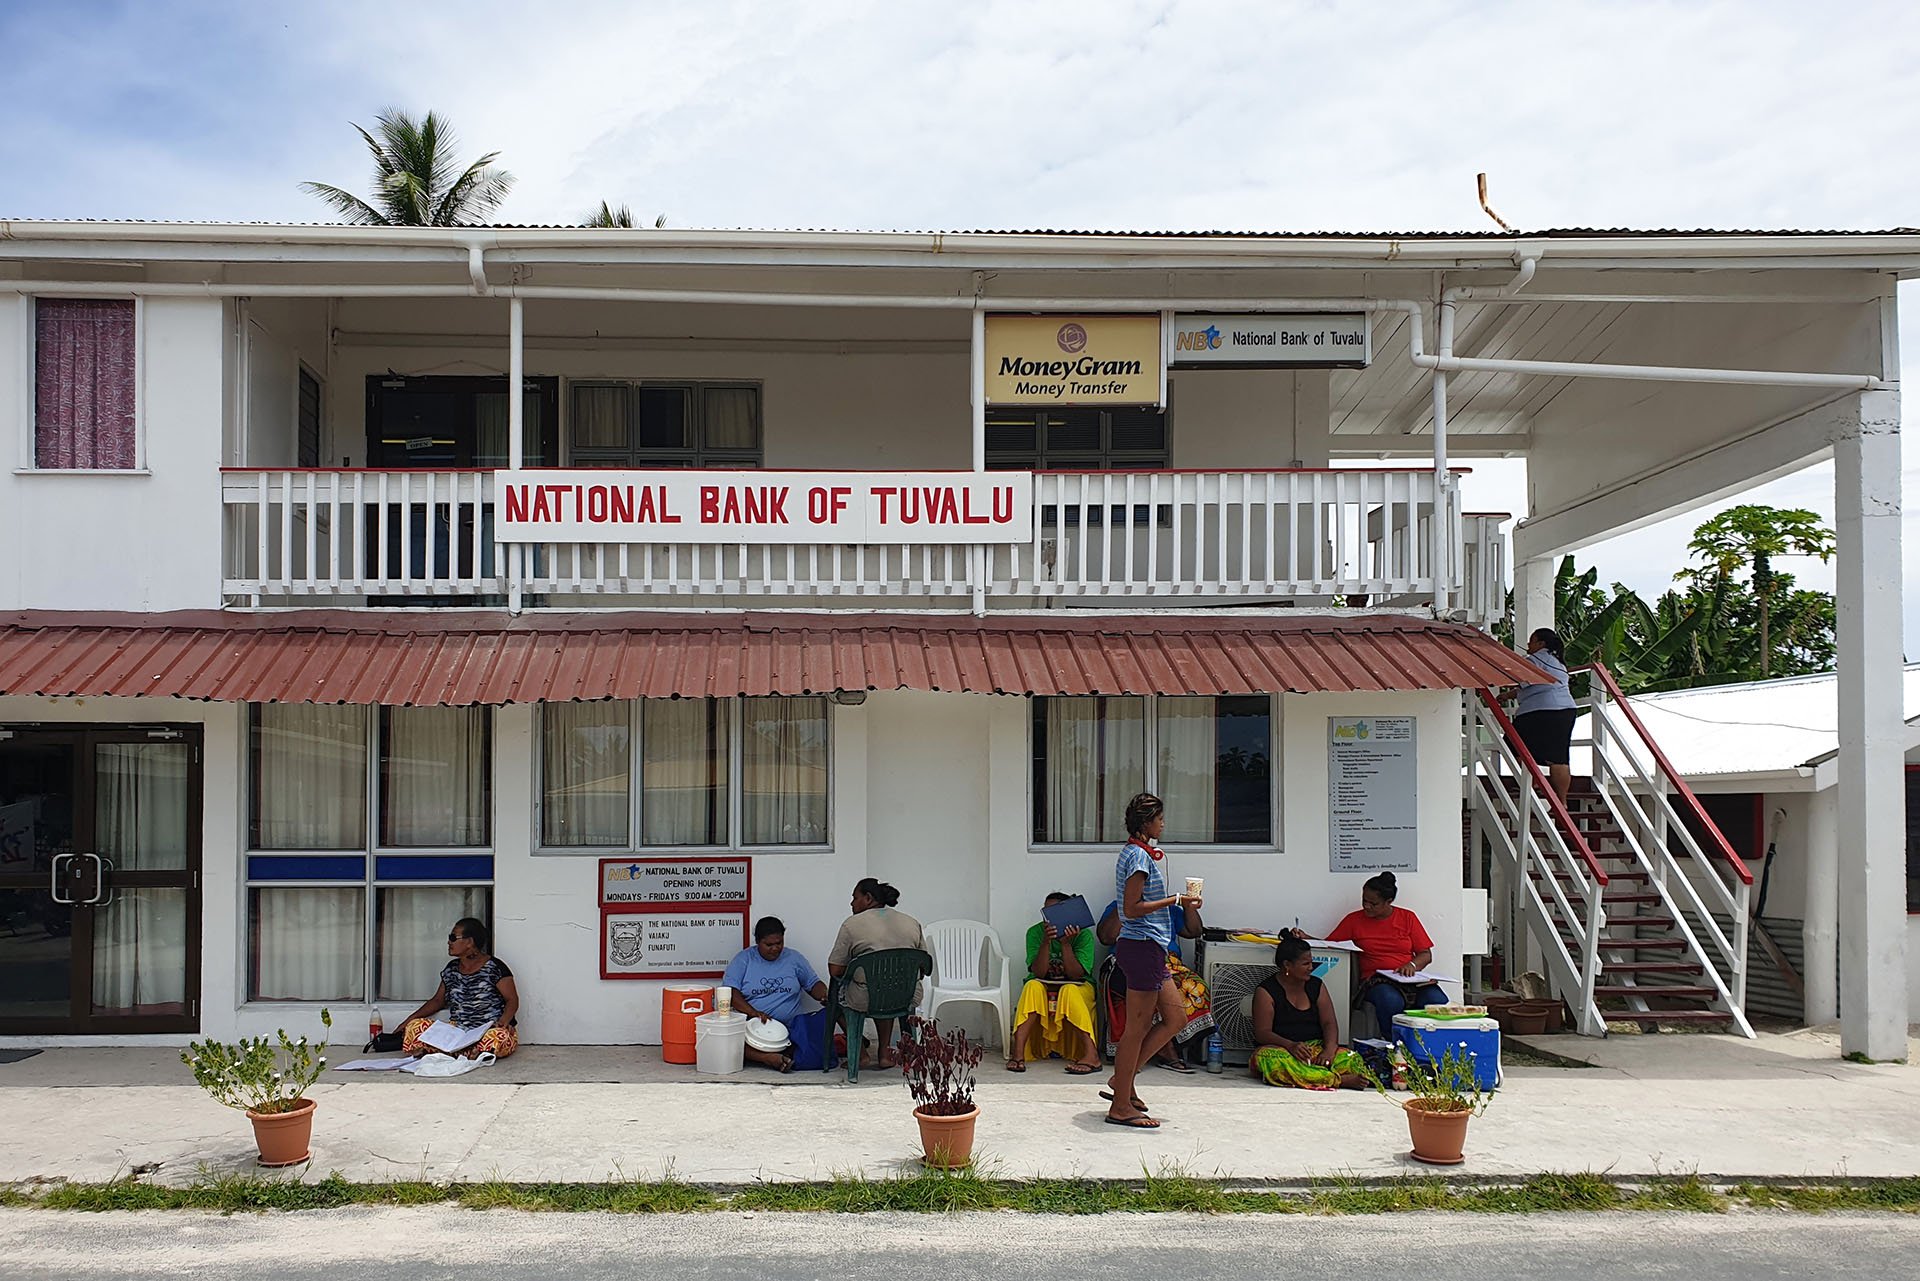 20191031_110910_National bank of Tuvalu Funafuti_1920x1280.jpg